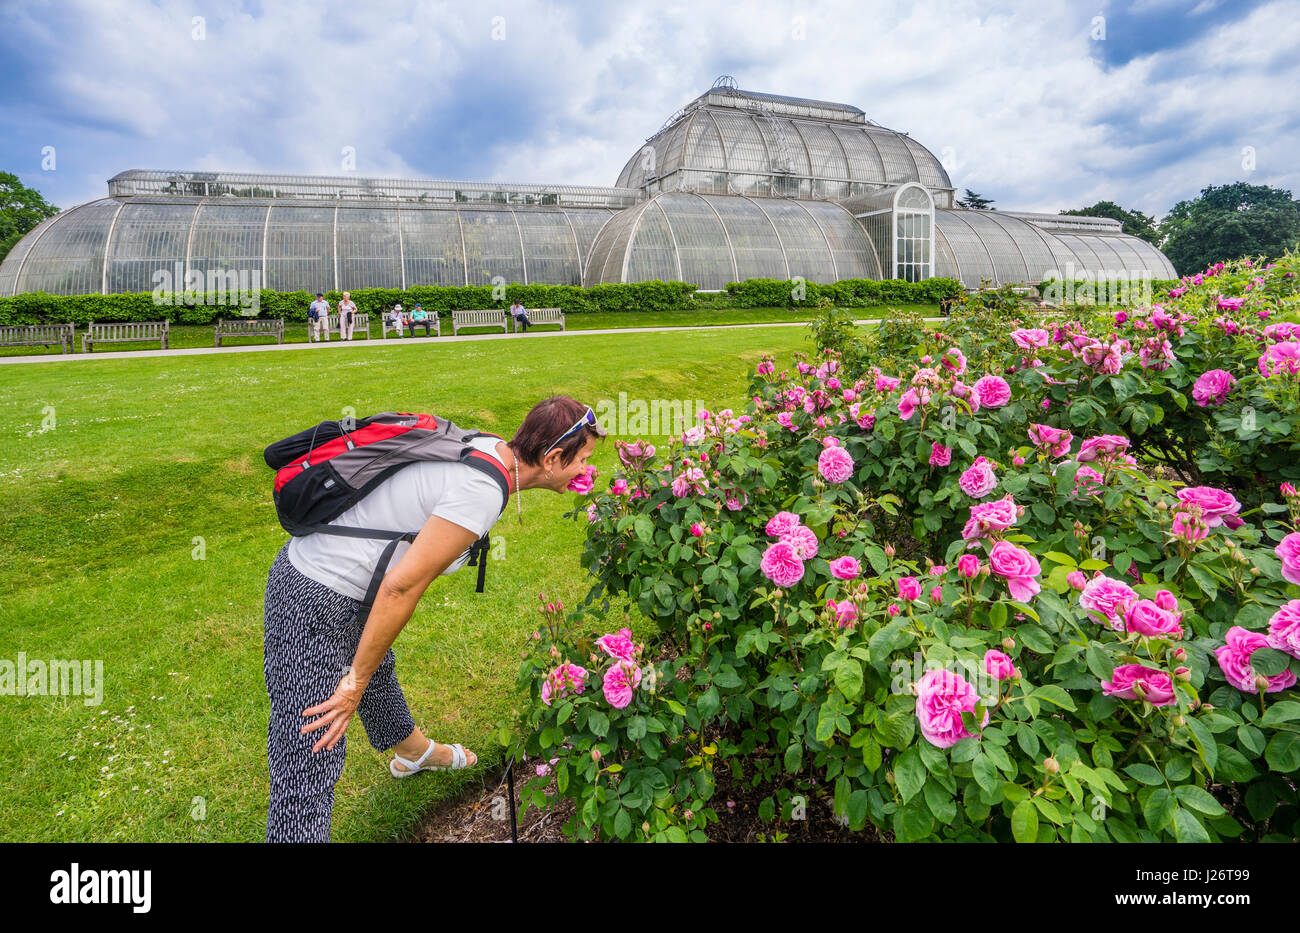 Royaume-uni, Angleterre, Kew Gardens dans le London Borough of Richmond upon Thames, l'odeur des roses au jardin de roses sur fond de la paume Banque D'Images